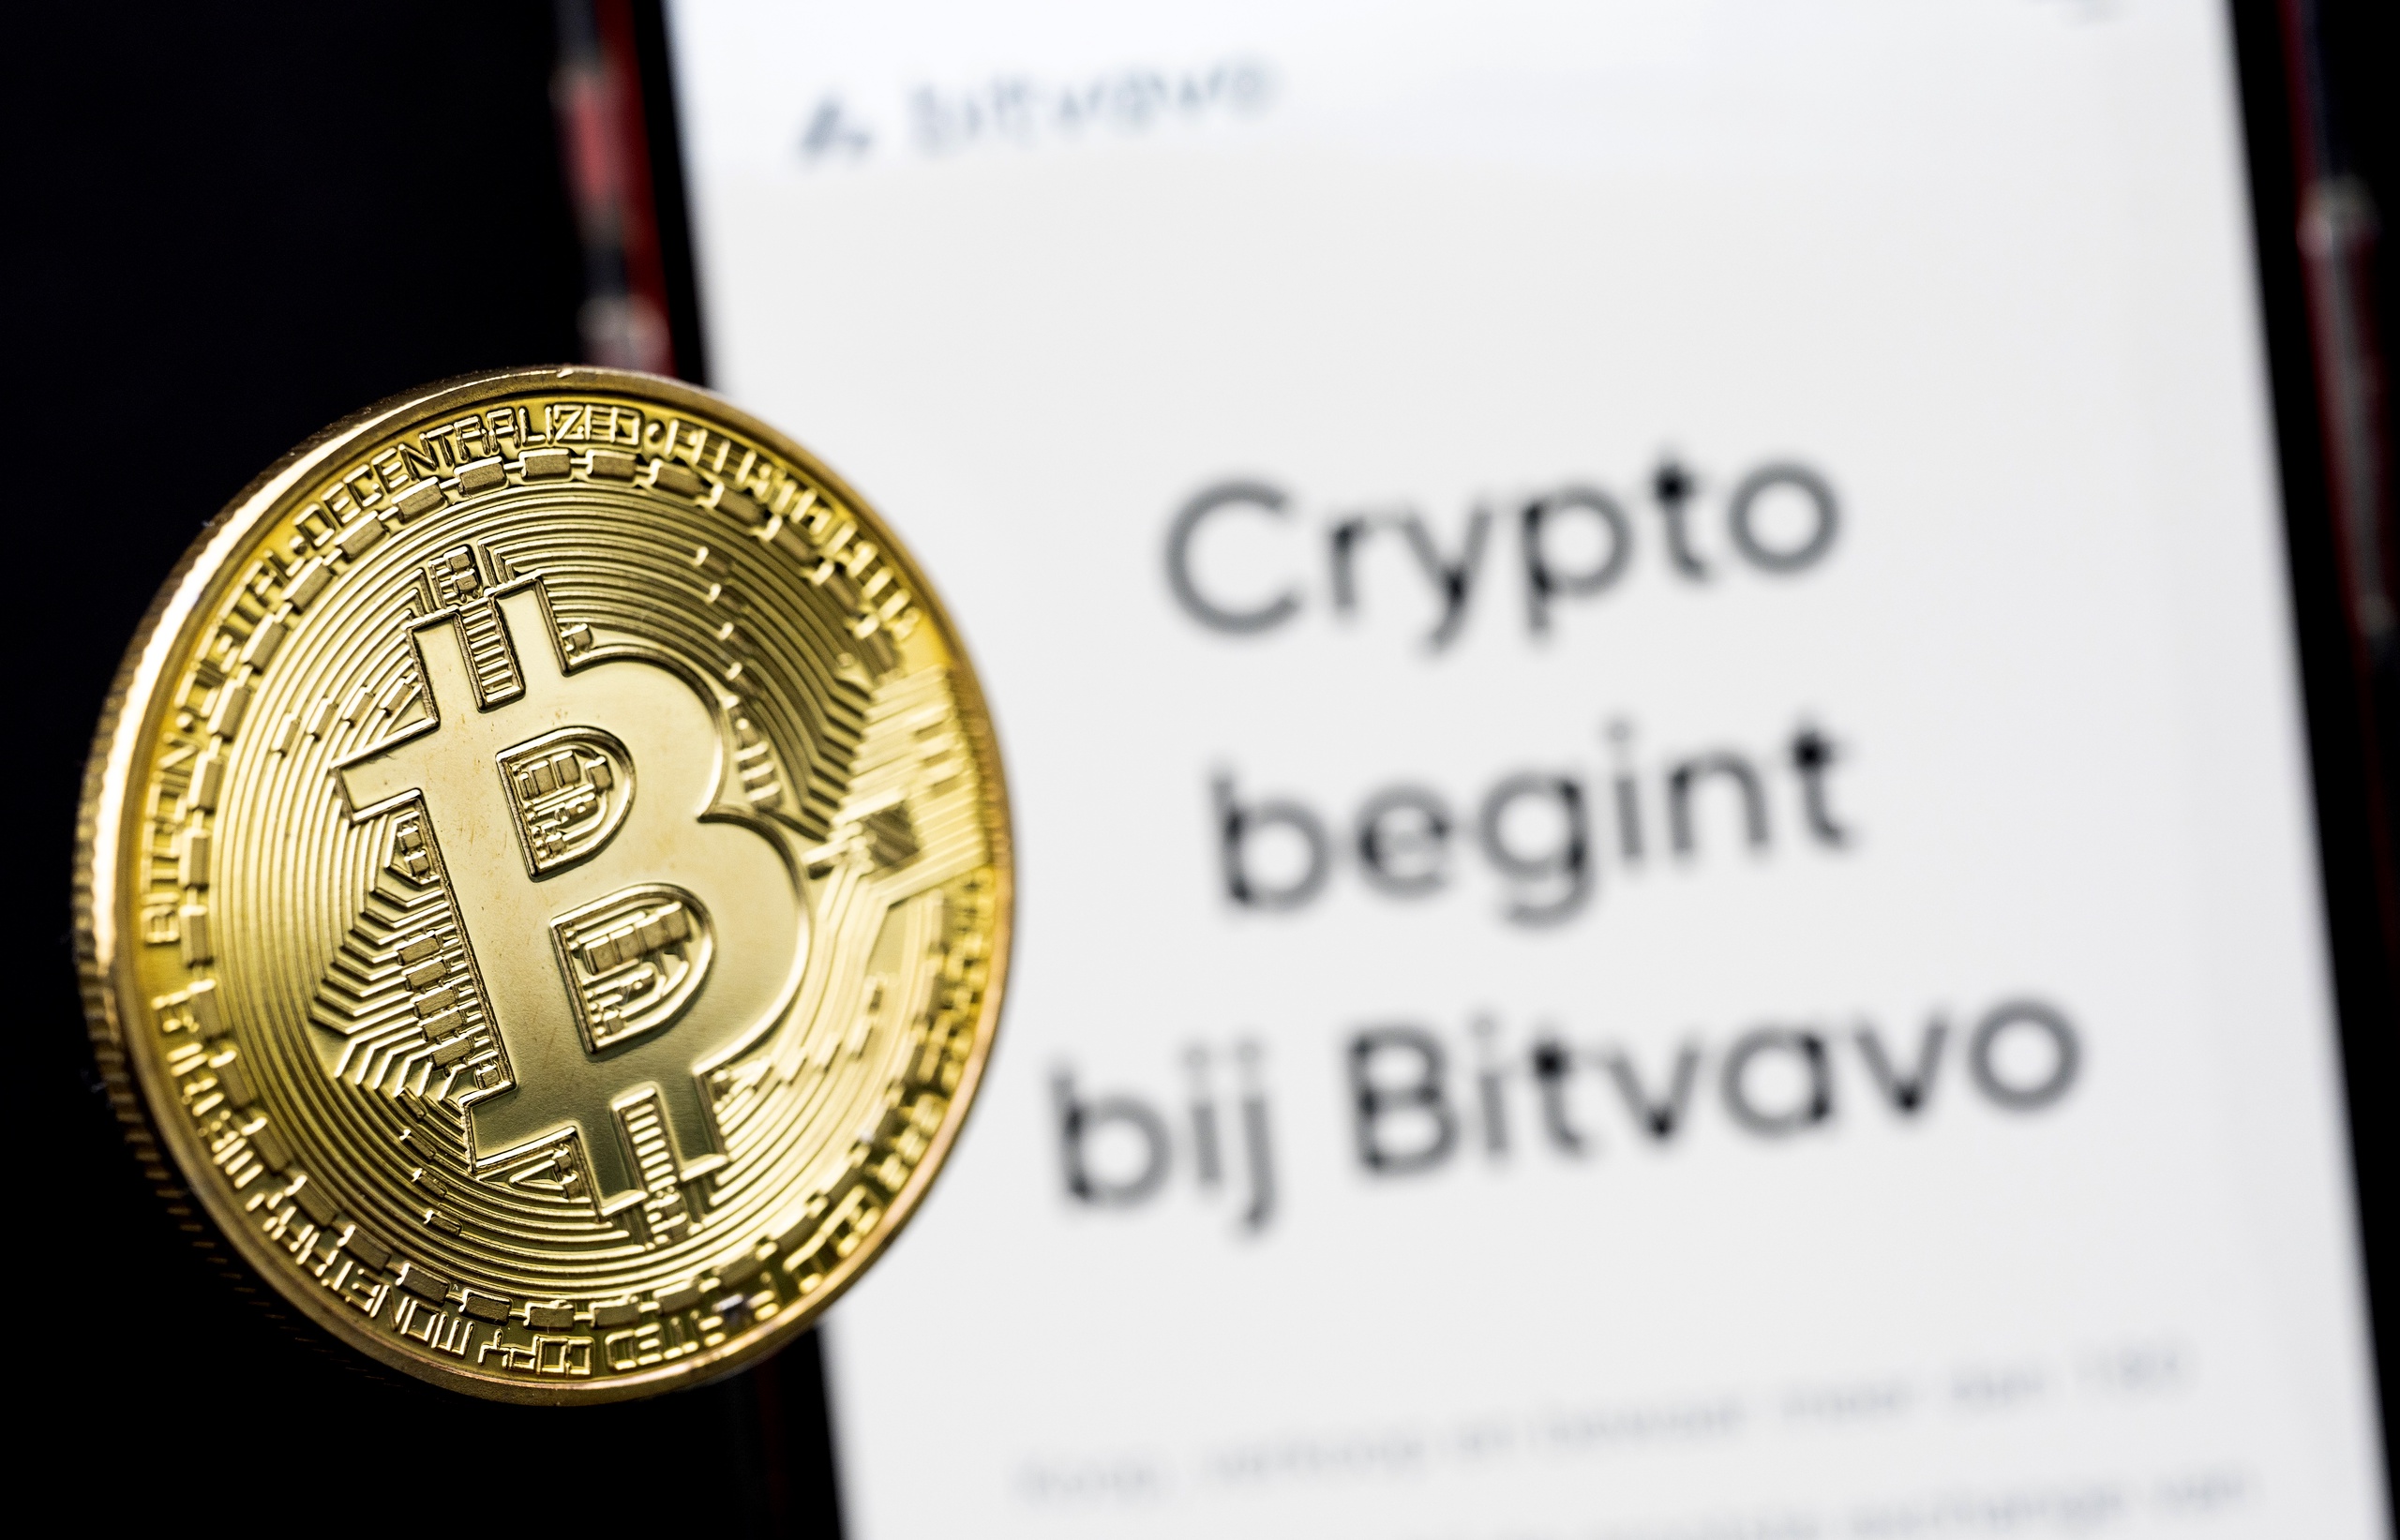 Cryptoplatform Bitvavo heeft een akkoord bereikt met Digital Currency Group (DCG) over de terugbetaling van klanttegoeden. Bitvavo-klanten hadden in totaal 280 miljoen euro uitgeleend aan DCG, maar konden daar door financiële problemen bij het bedrijf niet meer bij.